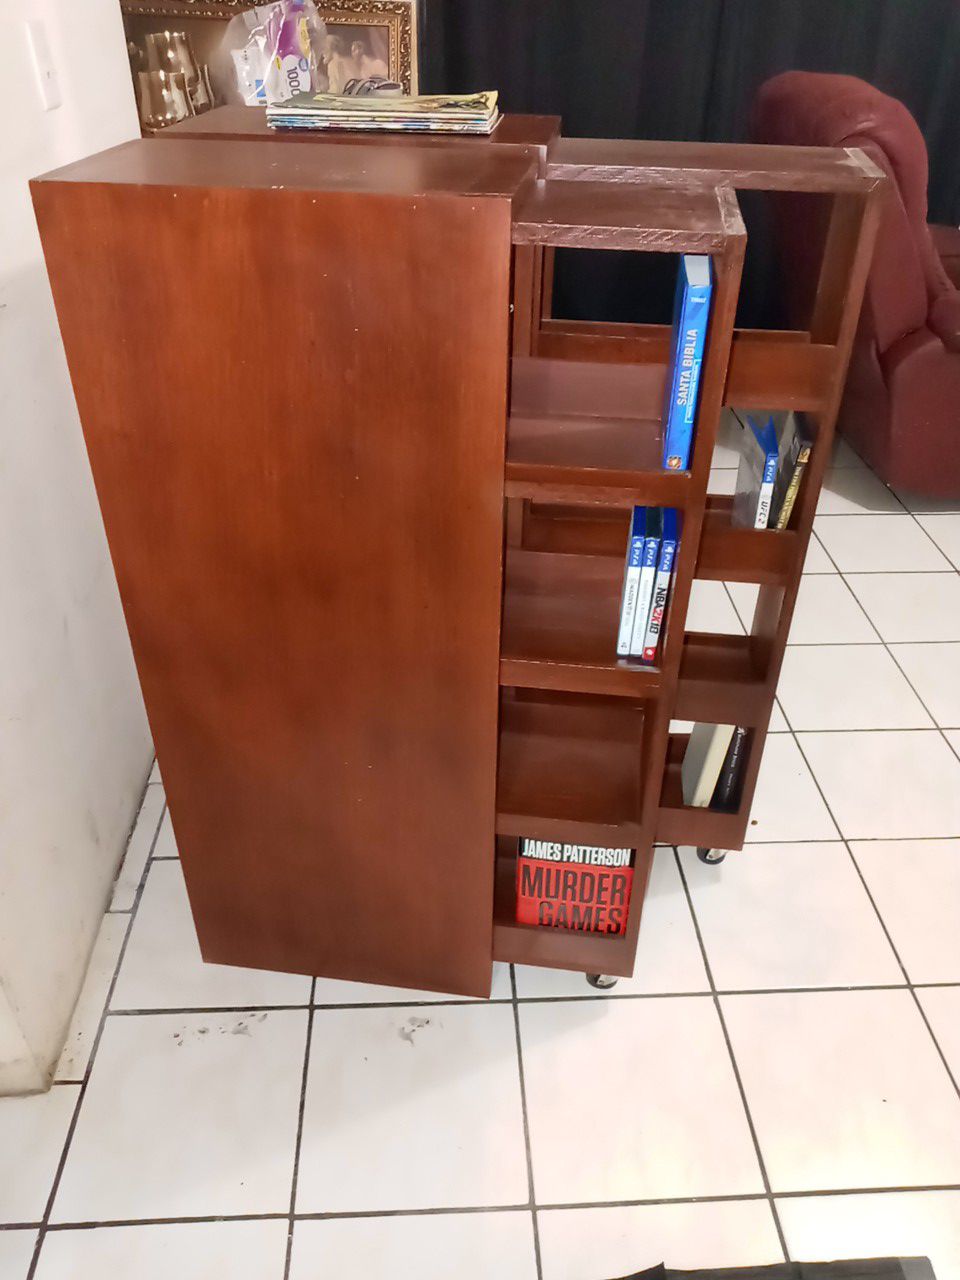 Custom Bookshelves